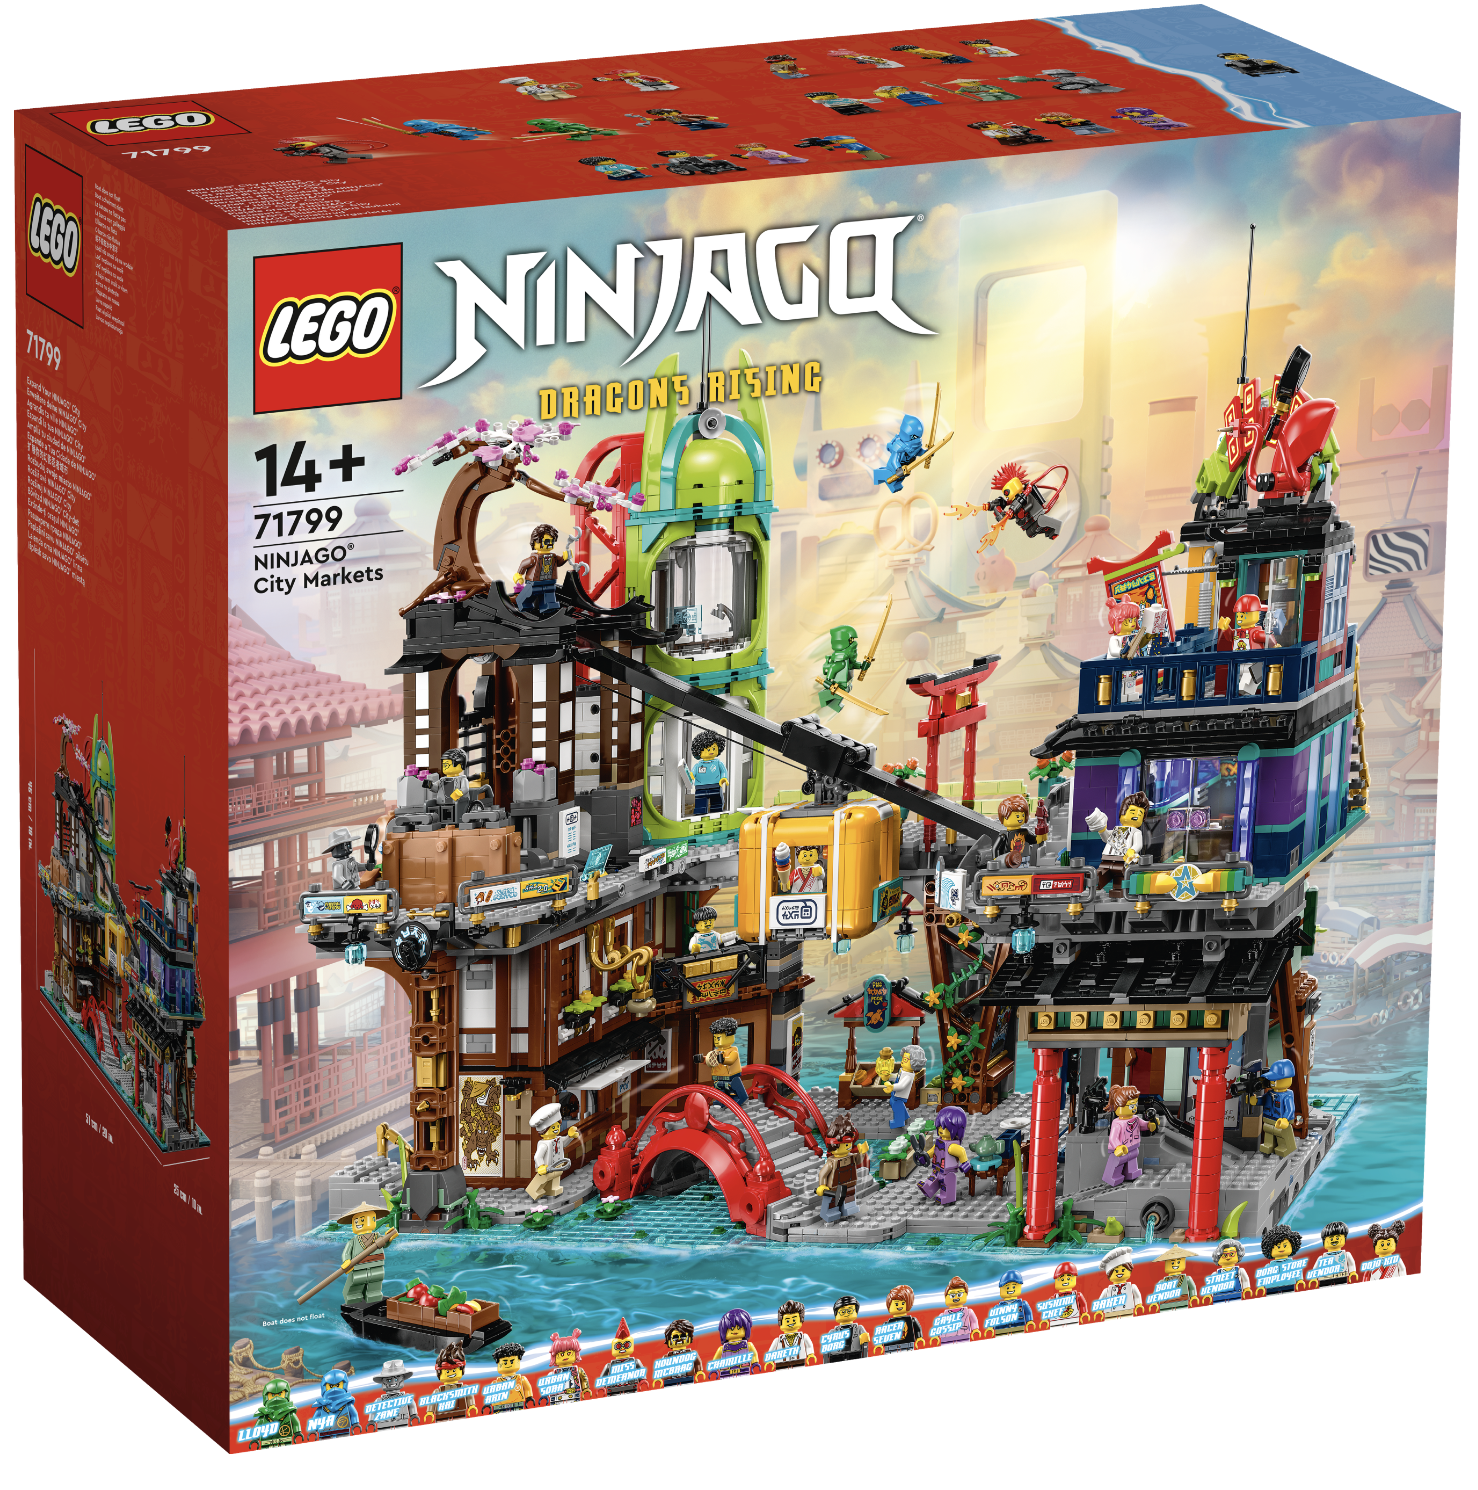 Arriva il nuovo LEGO 71799 – NINJAGO City Markets!